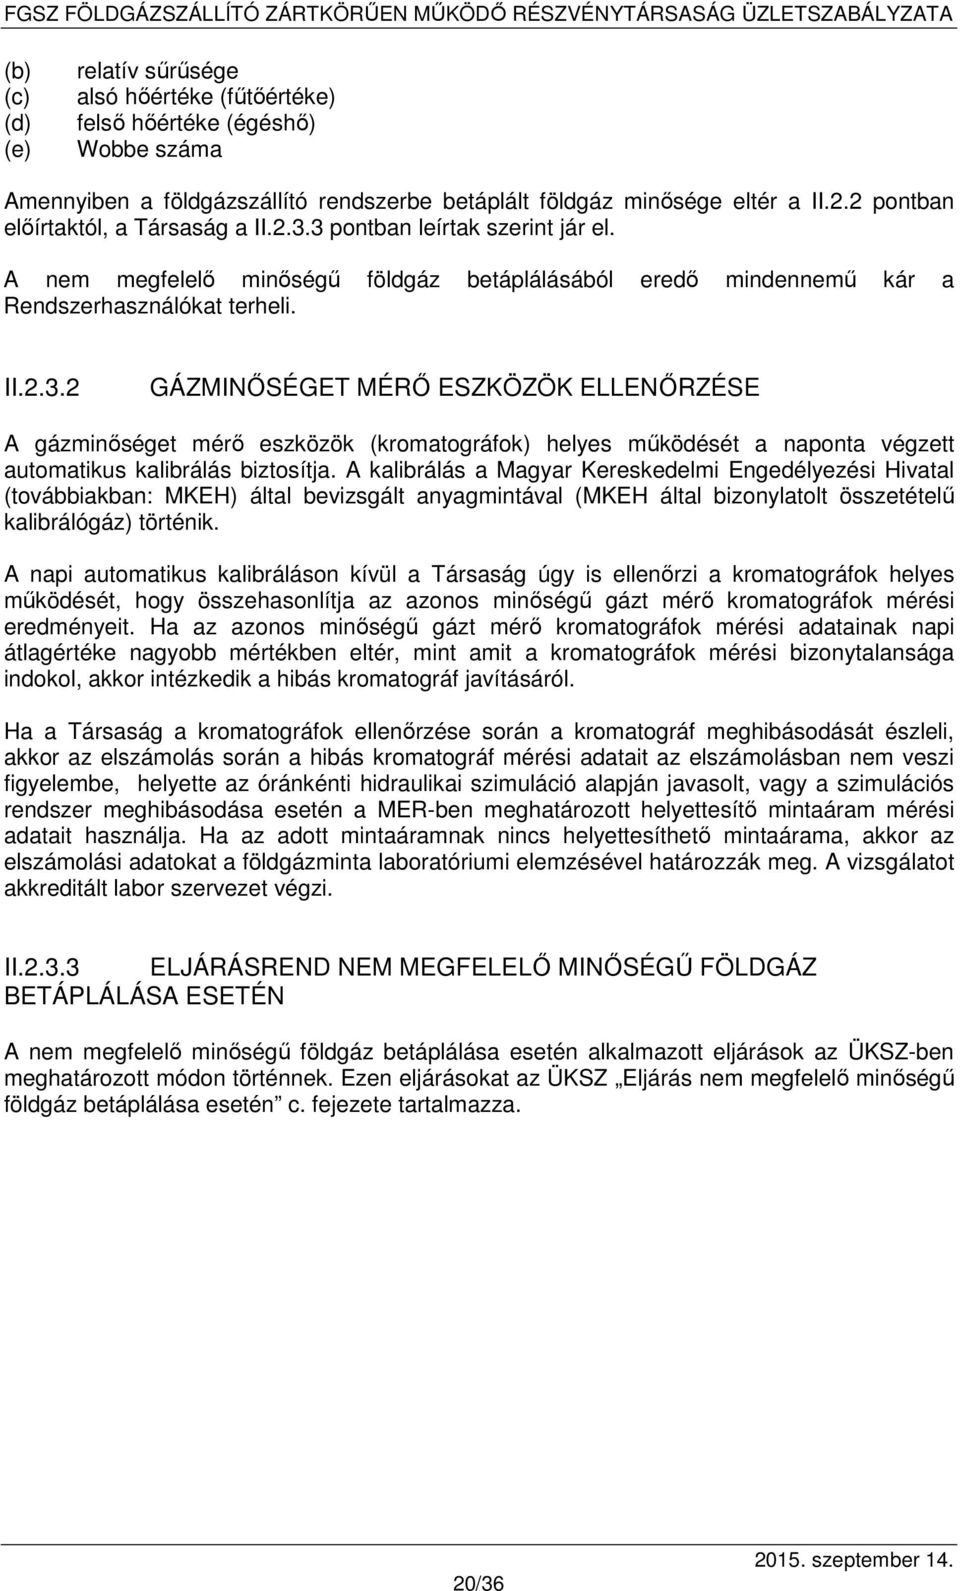 A kalibrálás a Magyar Kereskedelmi Engedélyezési Hivatal (továbbiakban: MKEH) által bevizsgált anyagmintával (MKEH által bizonylatolt összetételű kalibrálógáz) történik.